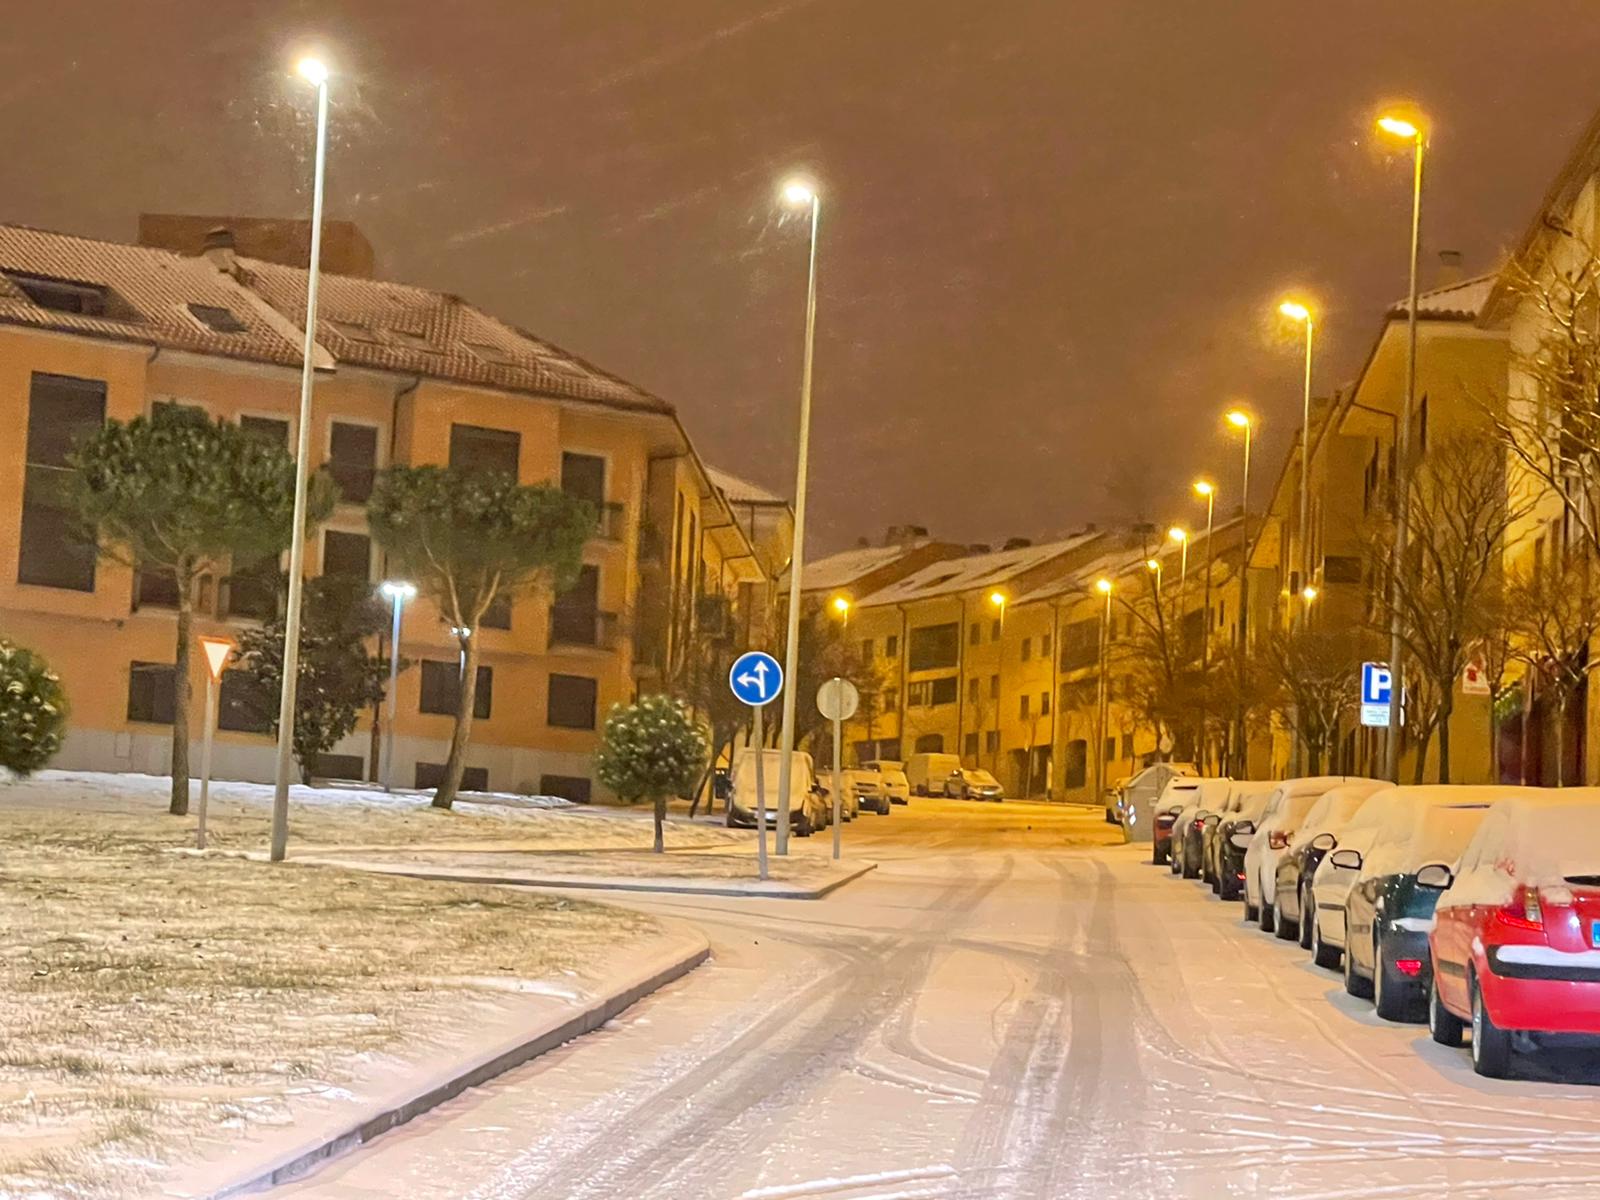 Nieve en Salamanca, 9 de enero (17)